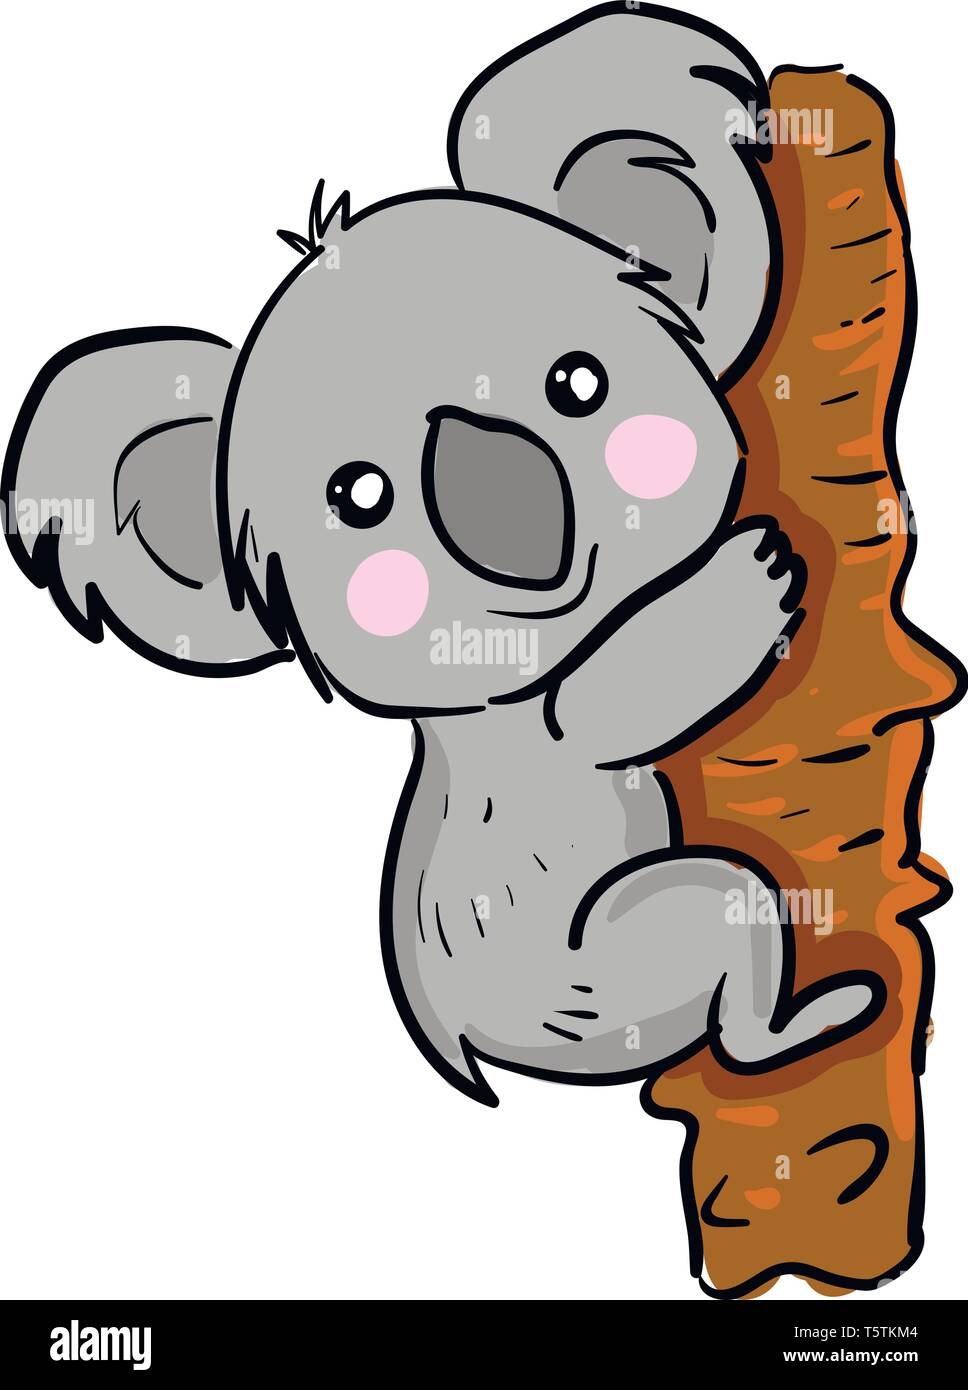 Einen Sussen Kleinen Cartoon Koala Nach Oben Klettern Den Baum Mit Einem Breiten Lacheln Auf Seinem Gesicht Vector Farbe Zeichnung Oder Abbildung Stock Vektorgrafik Alamy